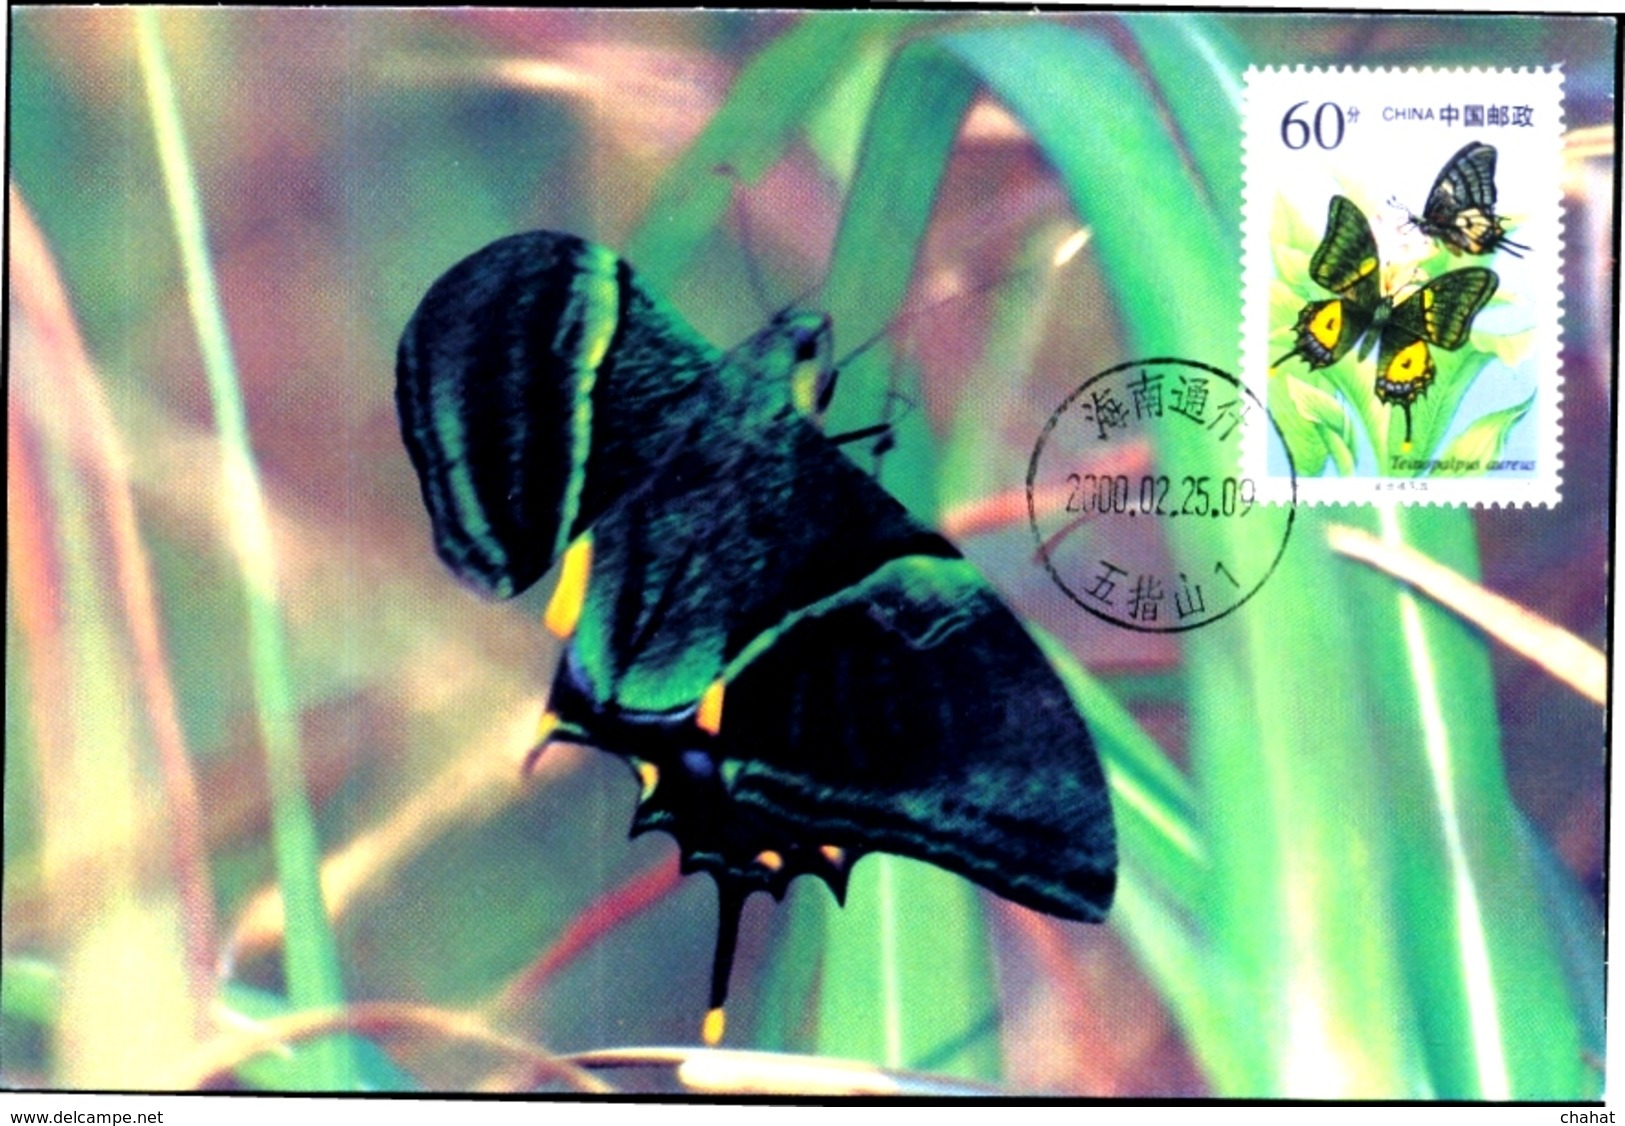 INSECTS- GOLDEN KAISER-E-HIND BUTTERFLY- MAXIMUM CARD- CHINA -2000-MNH- MC-54 - Butterflies